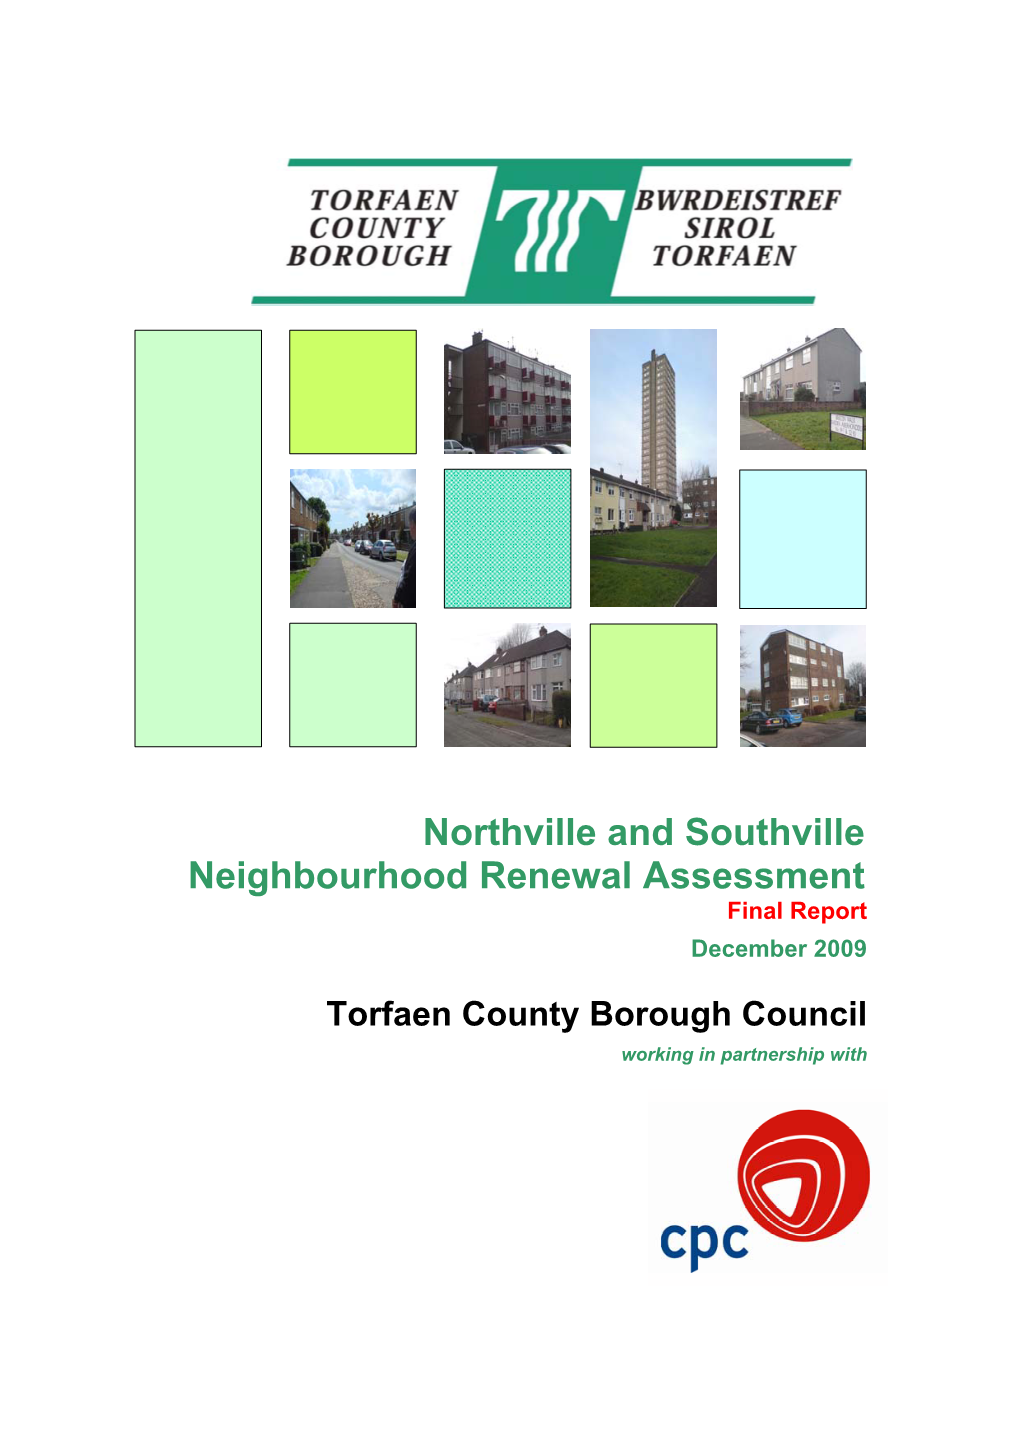 Northville and Southville Neighbourhood Renewal Assessment Final Report December 2009